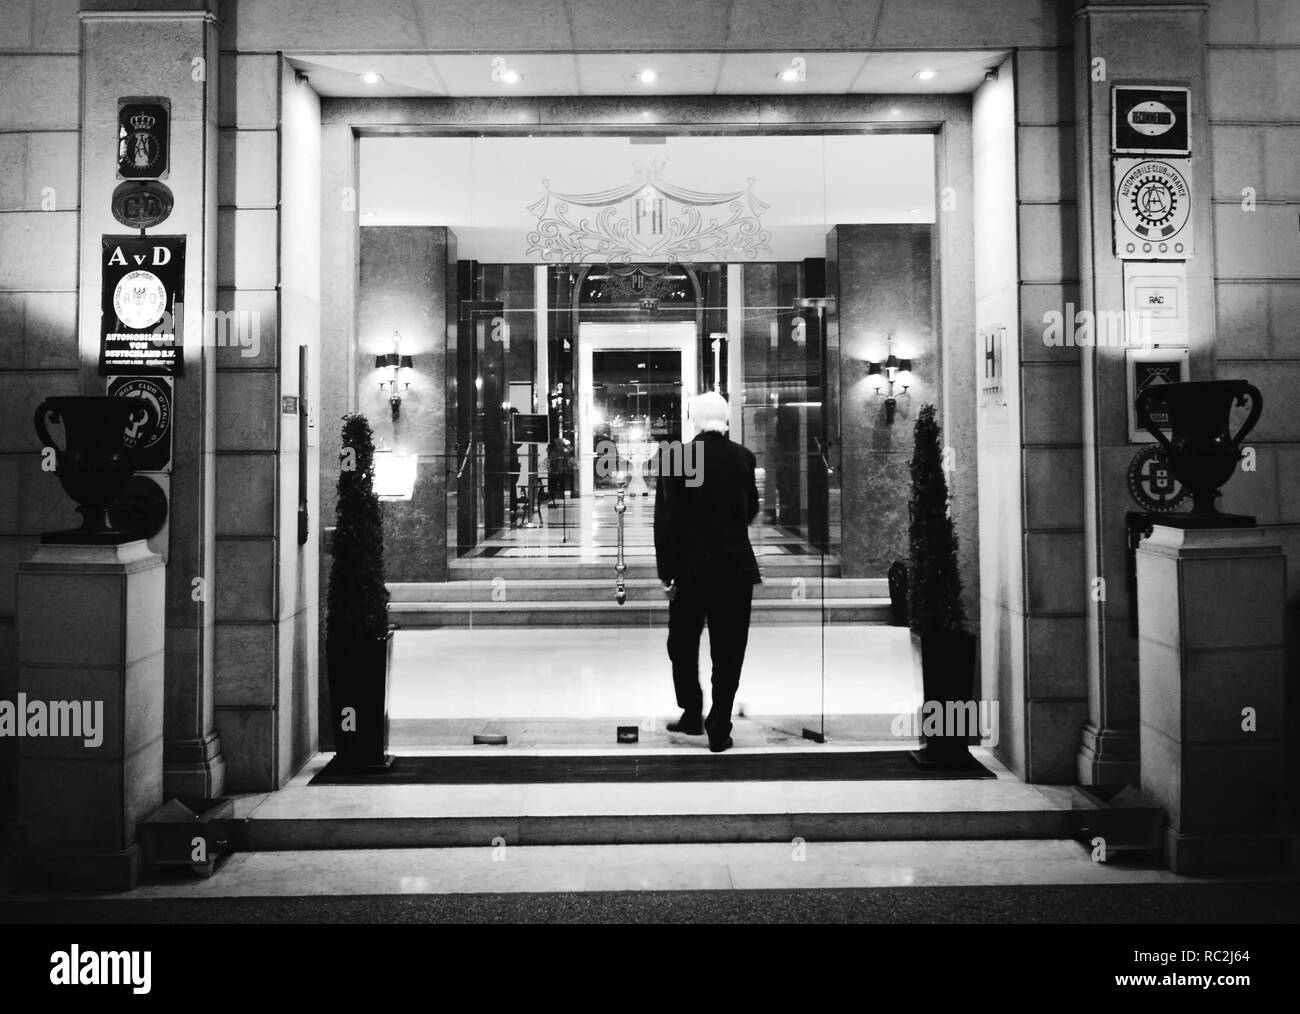 Facciata anteriore ingresso principale del famoso Hotel Palacio che fu frequentato sia dai tedeschi e Allied spie durante la seconda guerra mondiale, così come Ian Fleming Foto Stock